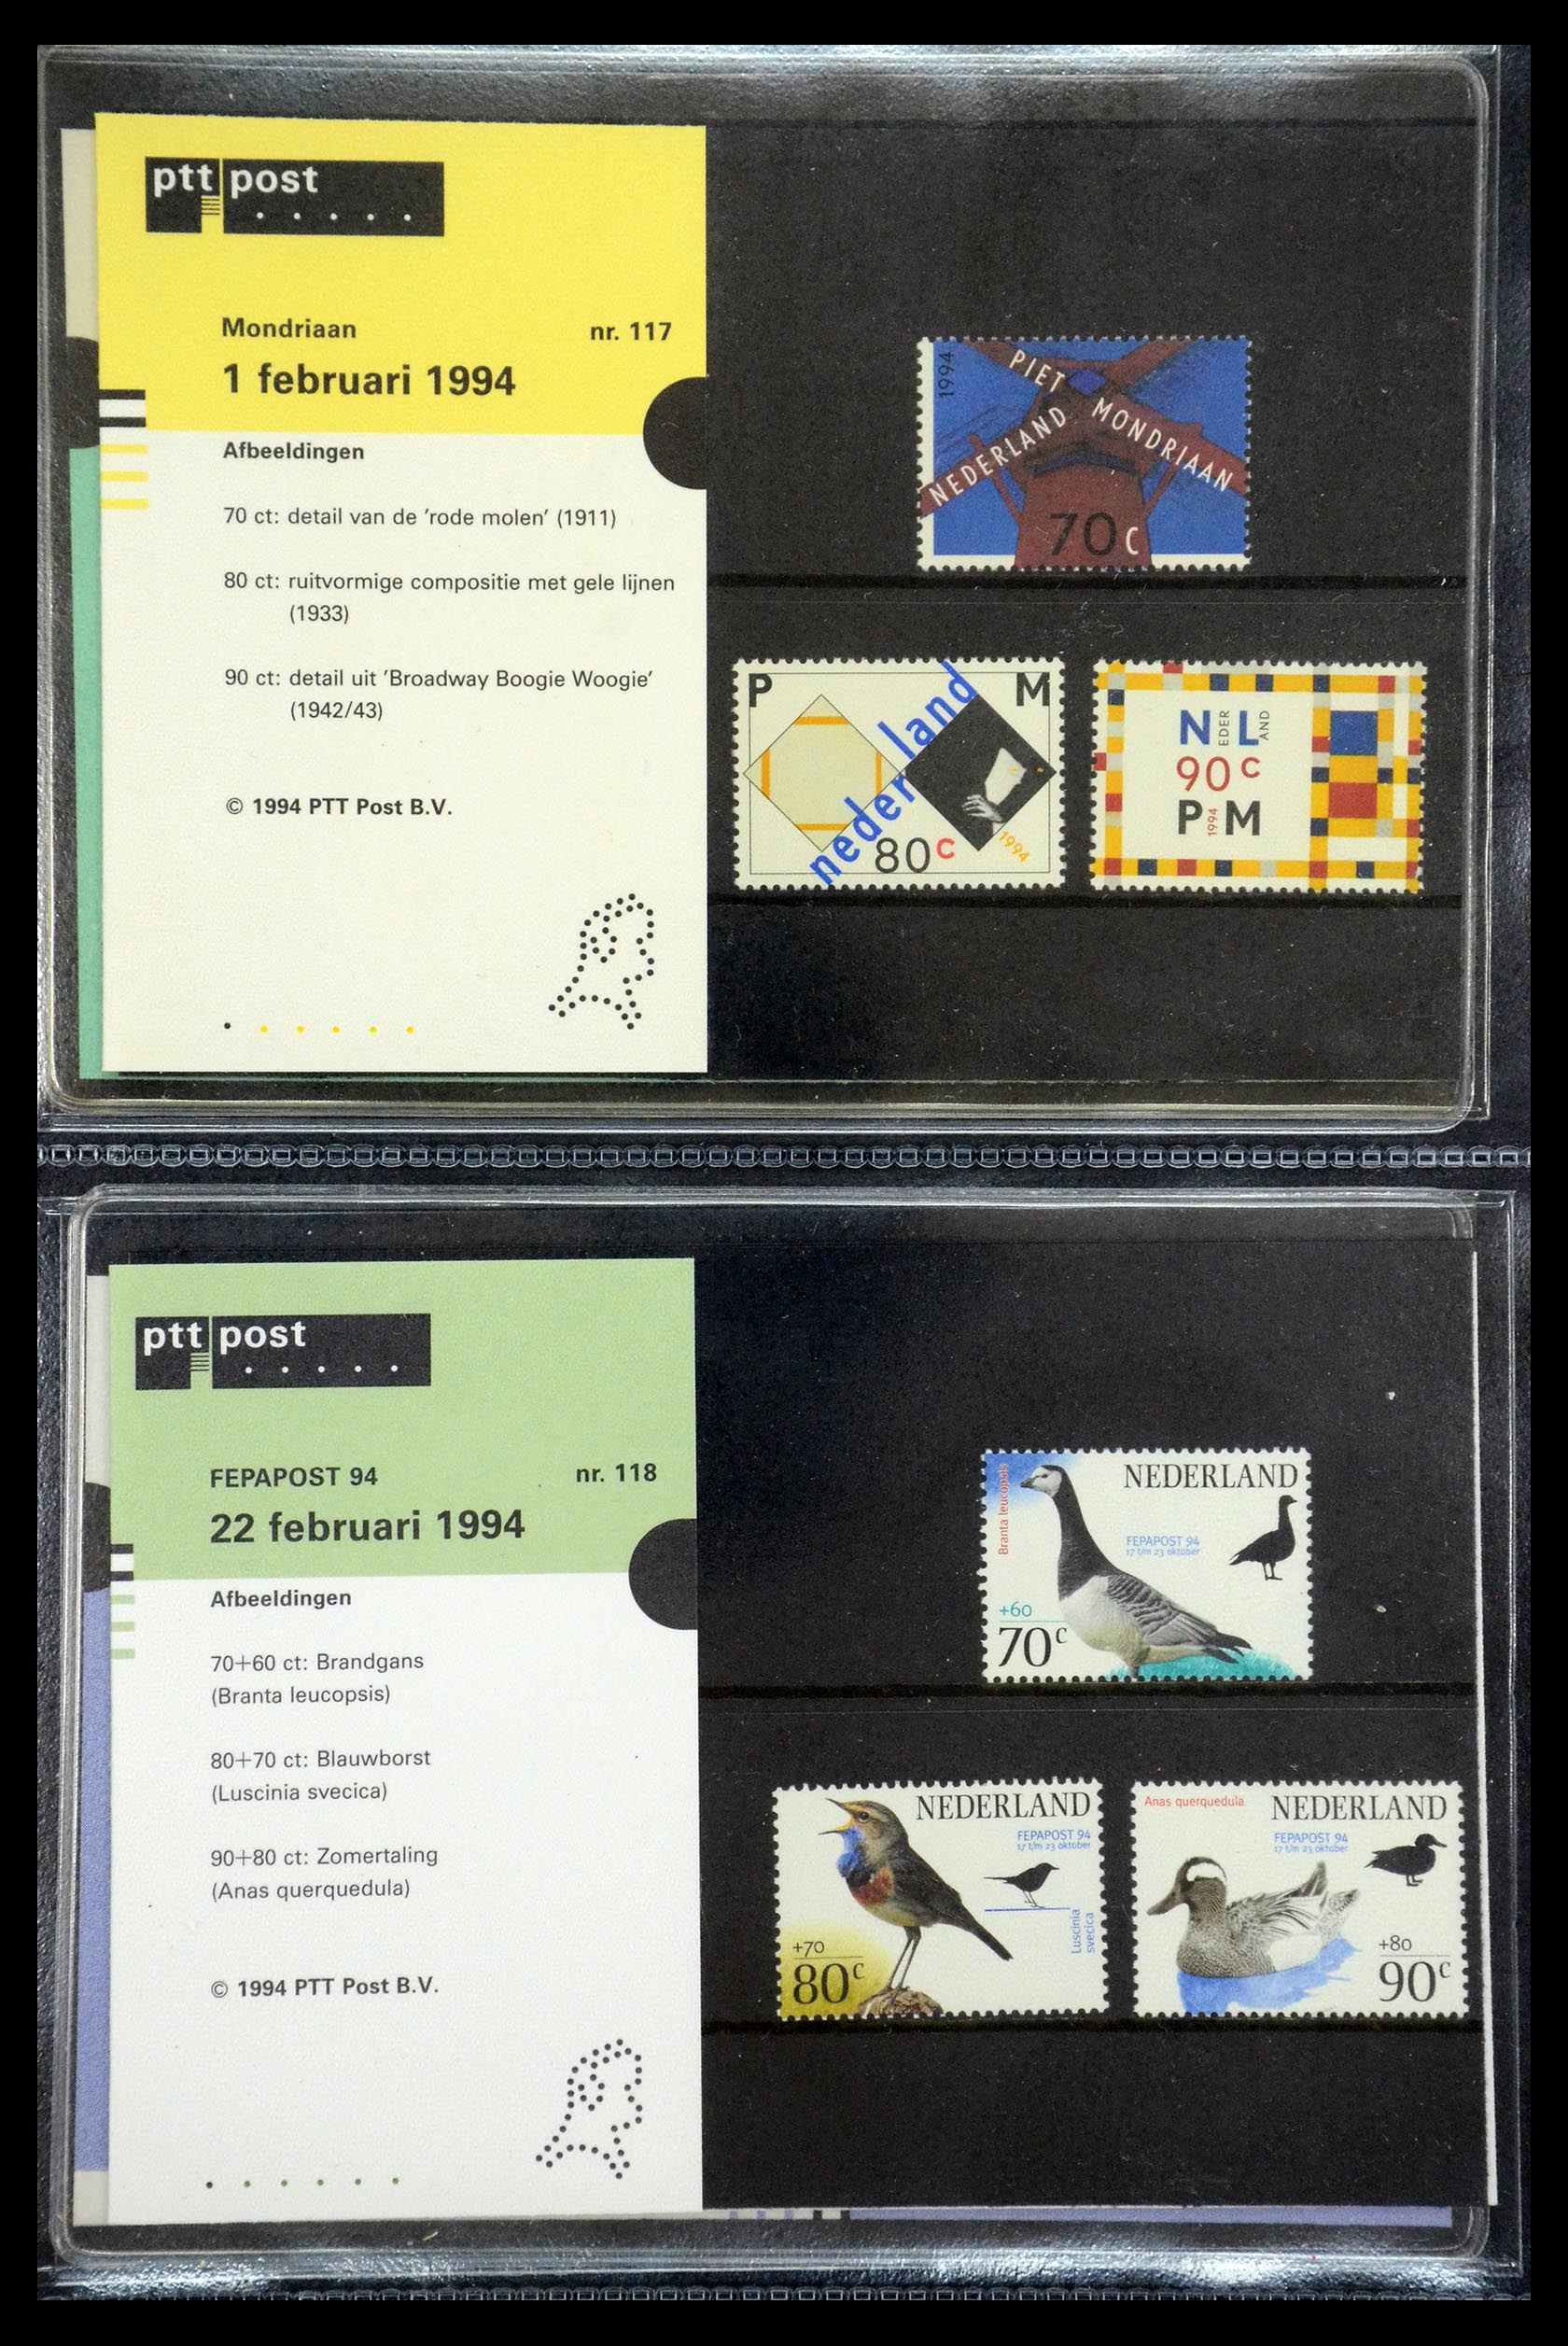 35187 060 - Stamp Collection 35187 Netherlands PTT presentation packs 1982-2019!